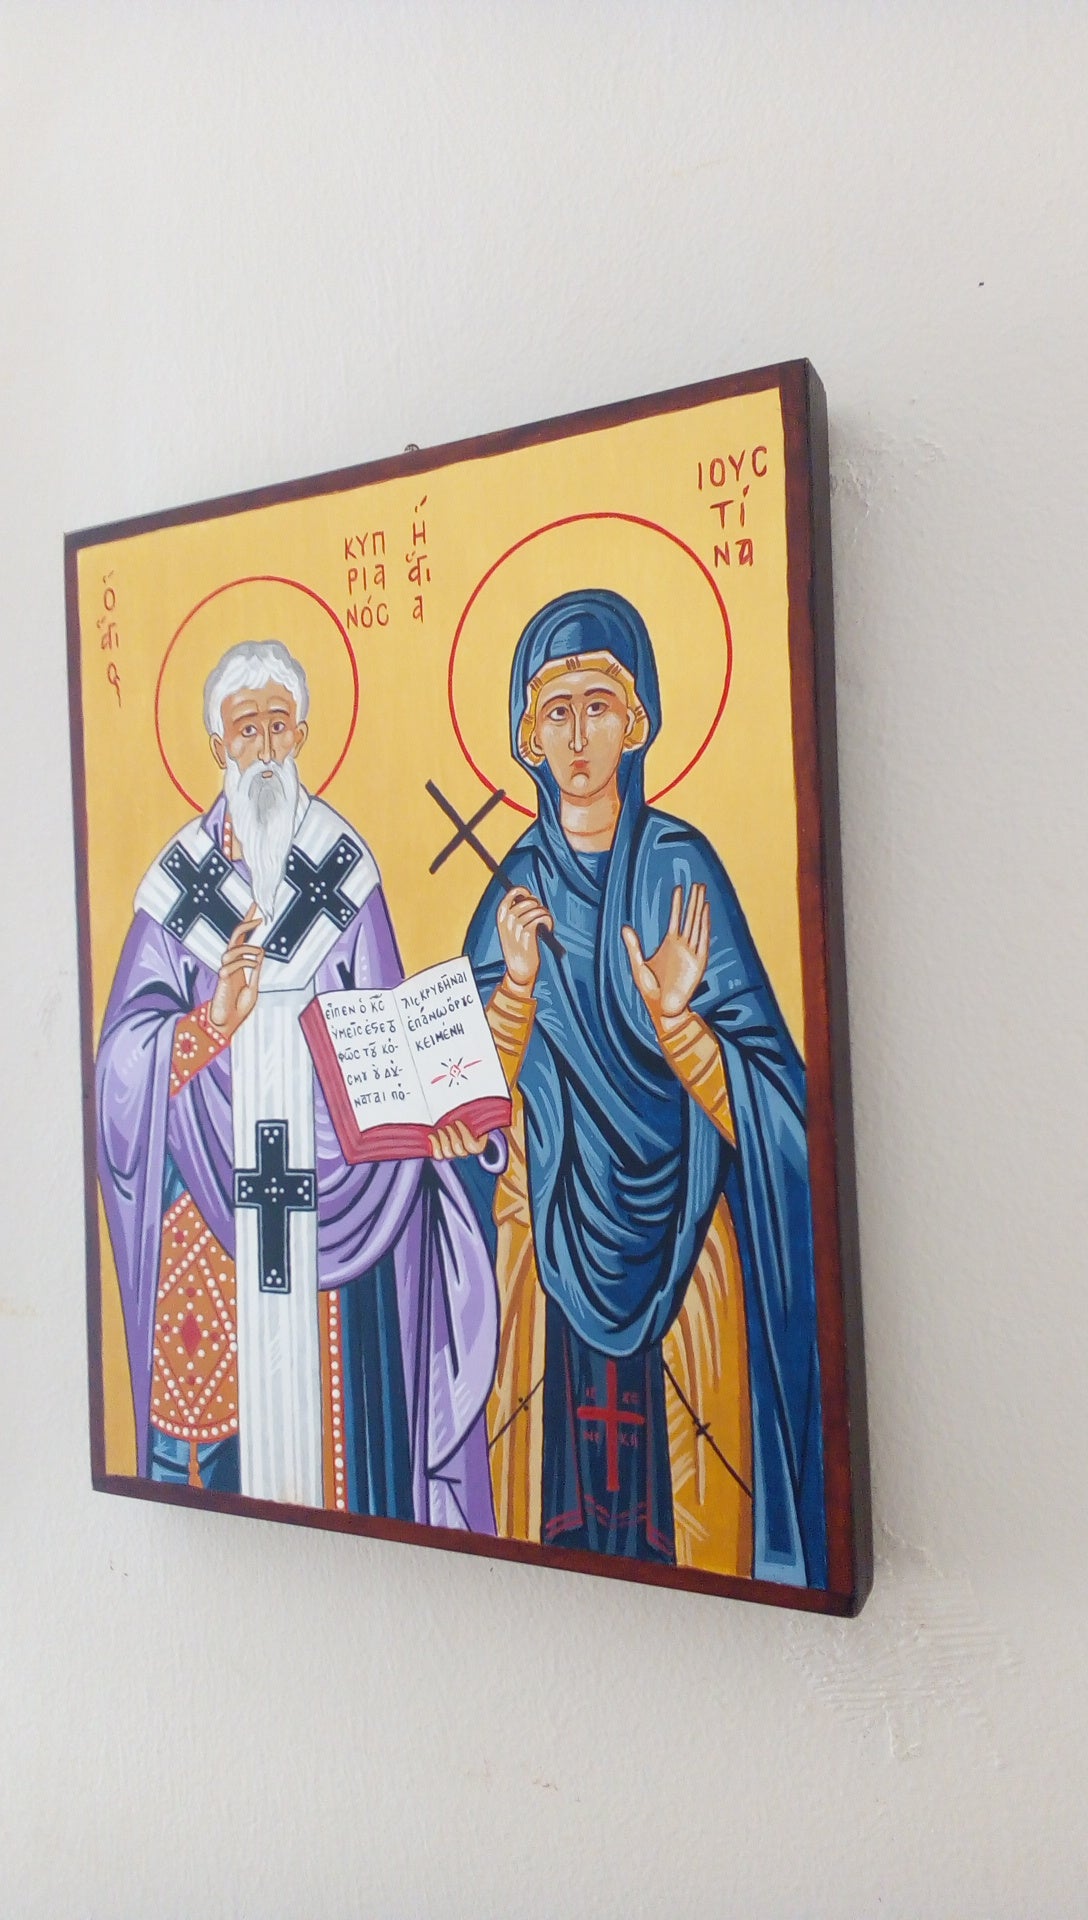 Saint Cyprian the Holy Martyr and Saint Justina the Virgin Martyr of Nicomidea